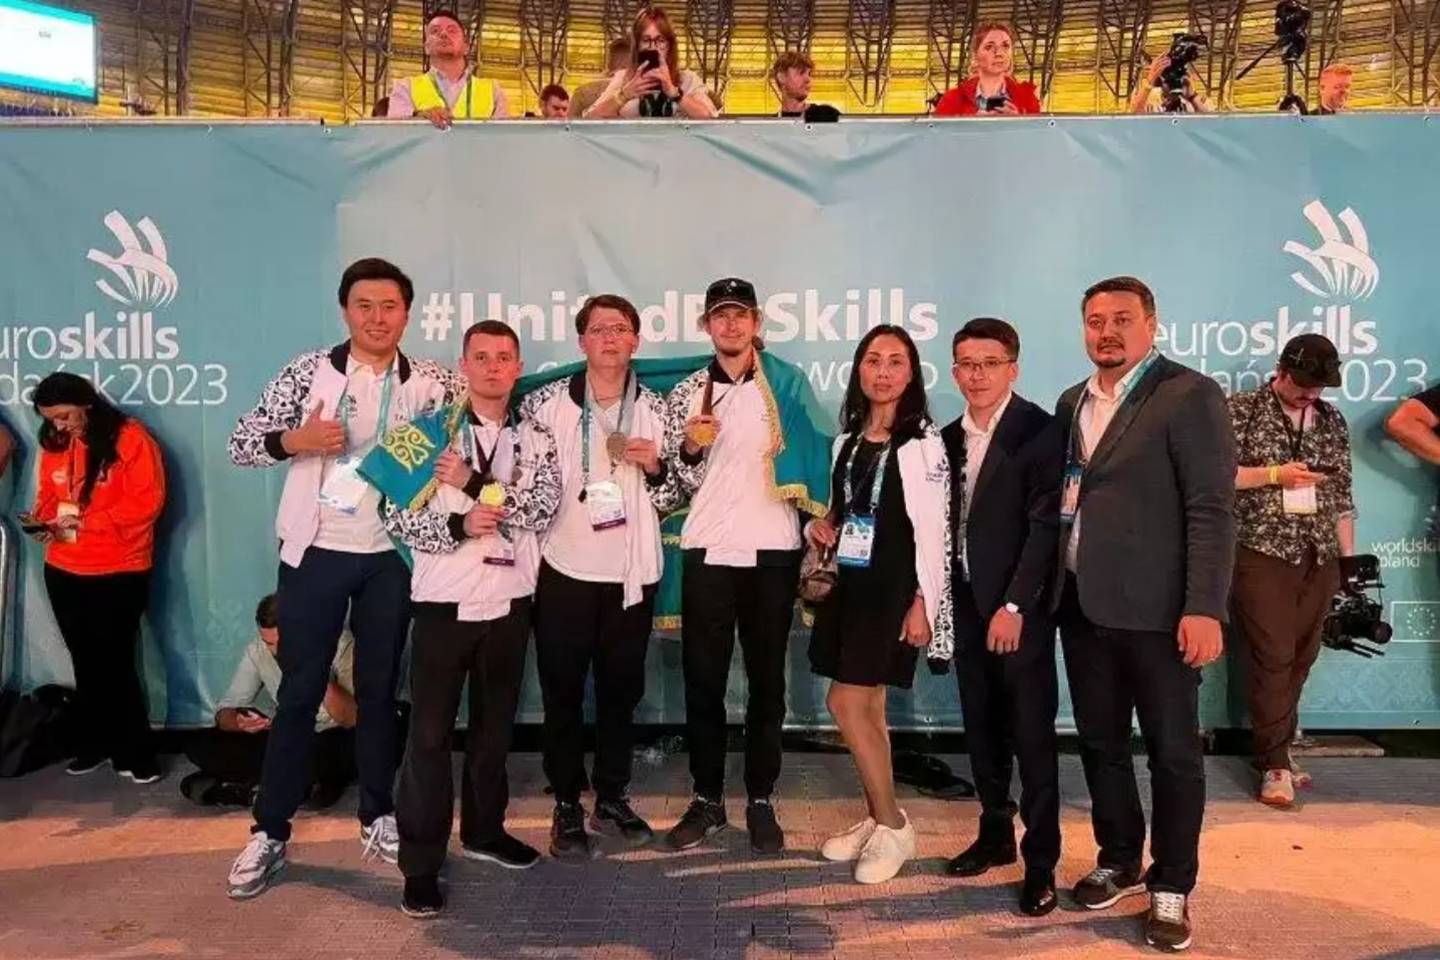 Новости спорта / Новости спорта в мире и Казахстане / EuroSkills: 2 медали и 4 "Медальона отличия" выиграла нацсборная Казахстана